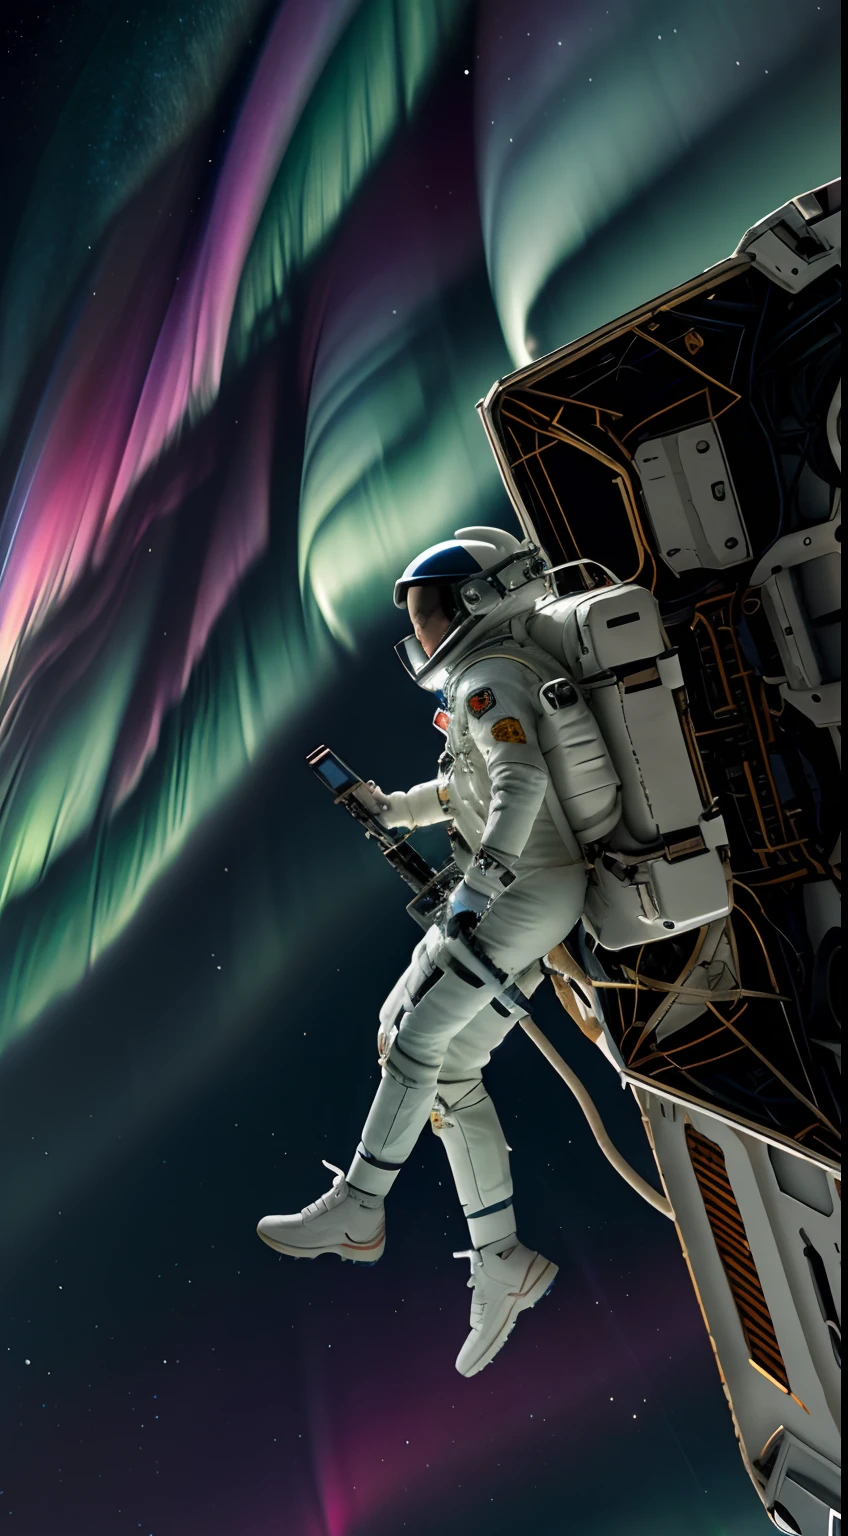 画面の上半分はオーロラです 画面の上半分はオーロラです、下半分は女性宇宙飛行士を描いている